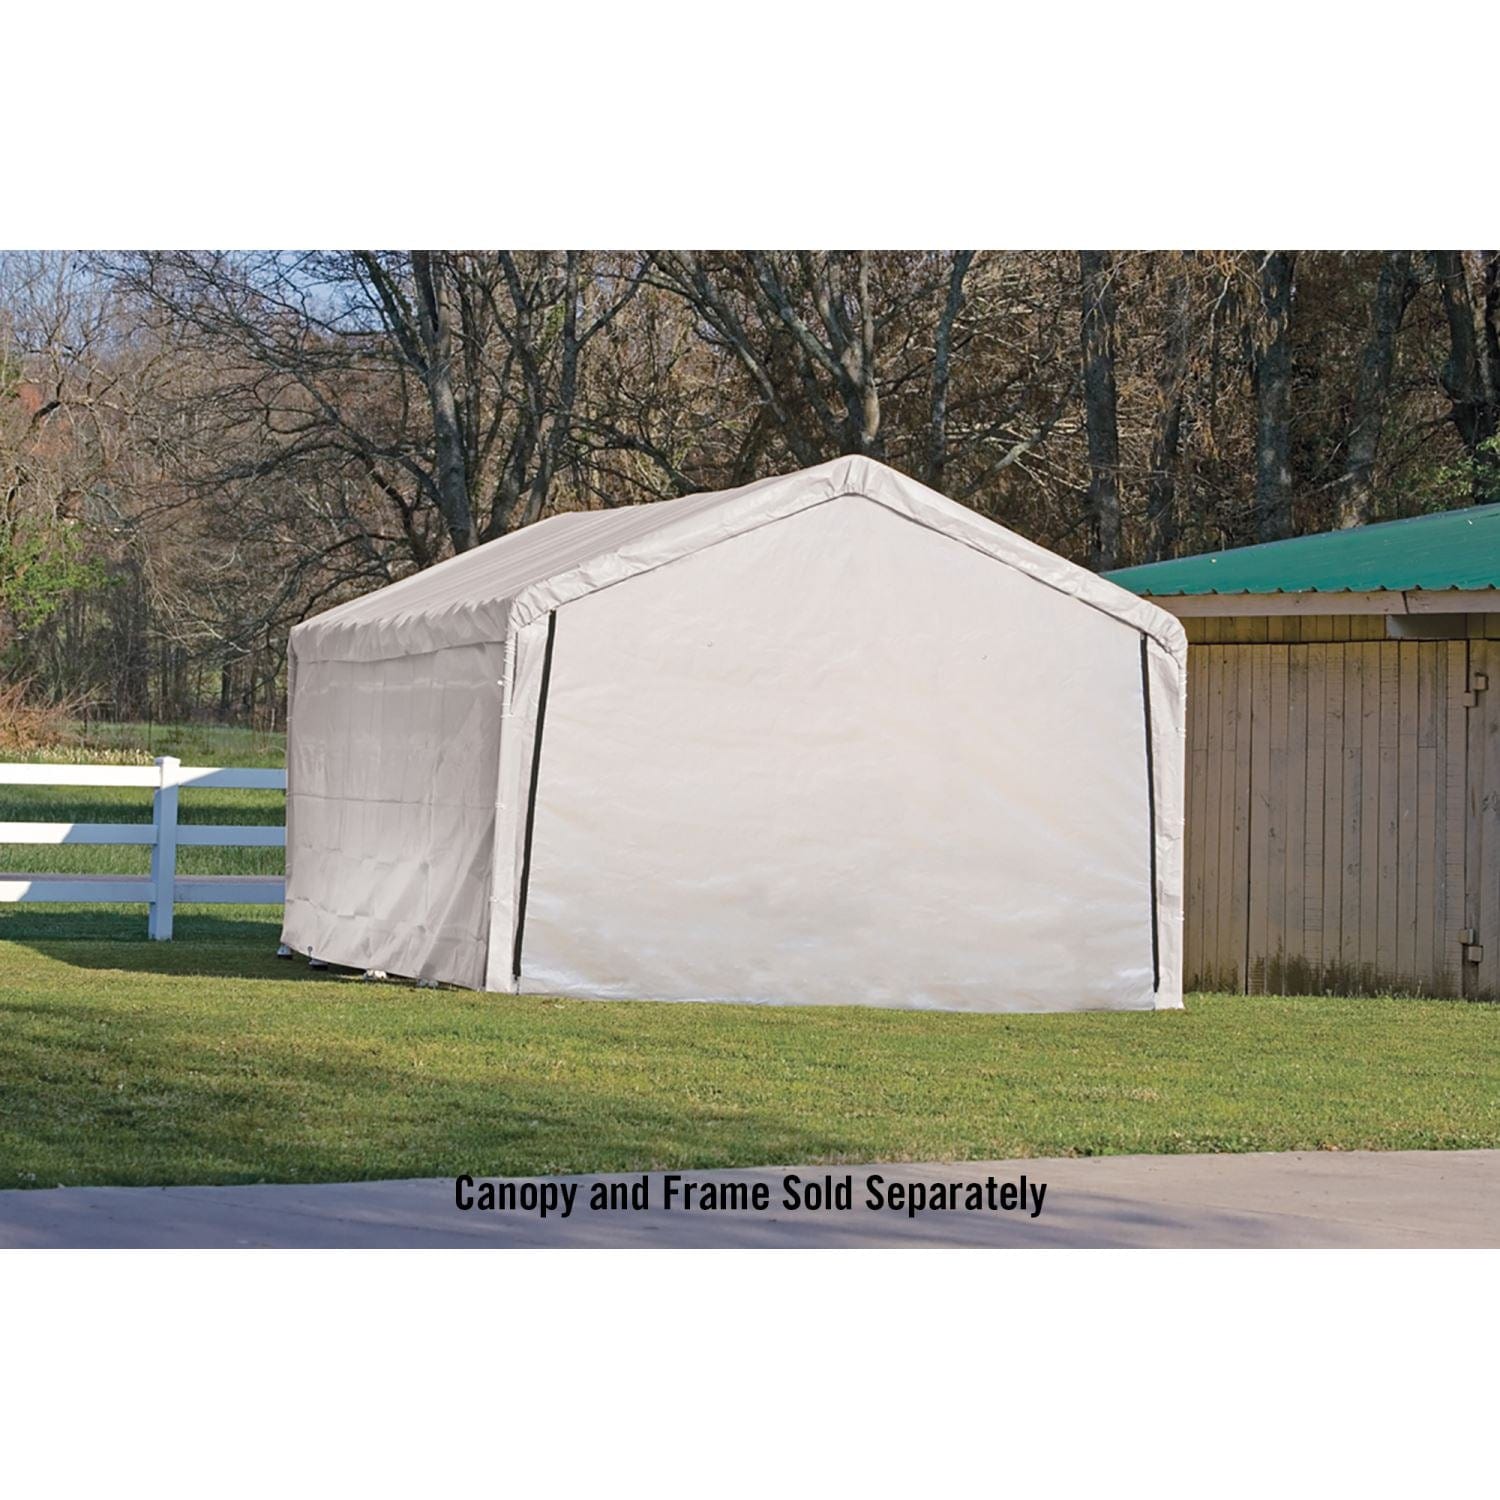 ShelterLogic Canopy Enclosure Kit ShelterLogic | SuperMax Canopy Enclosure Kit for the ShelterLogic | SuperMax 18 x 20 ft. White - Frame and Canopy Sold Separately 26775